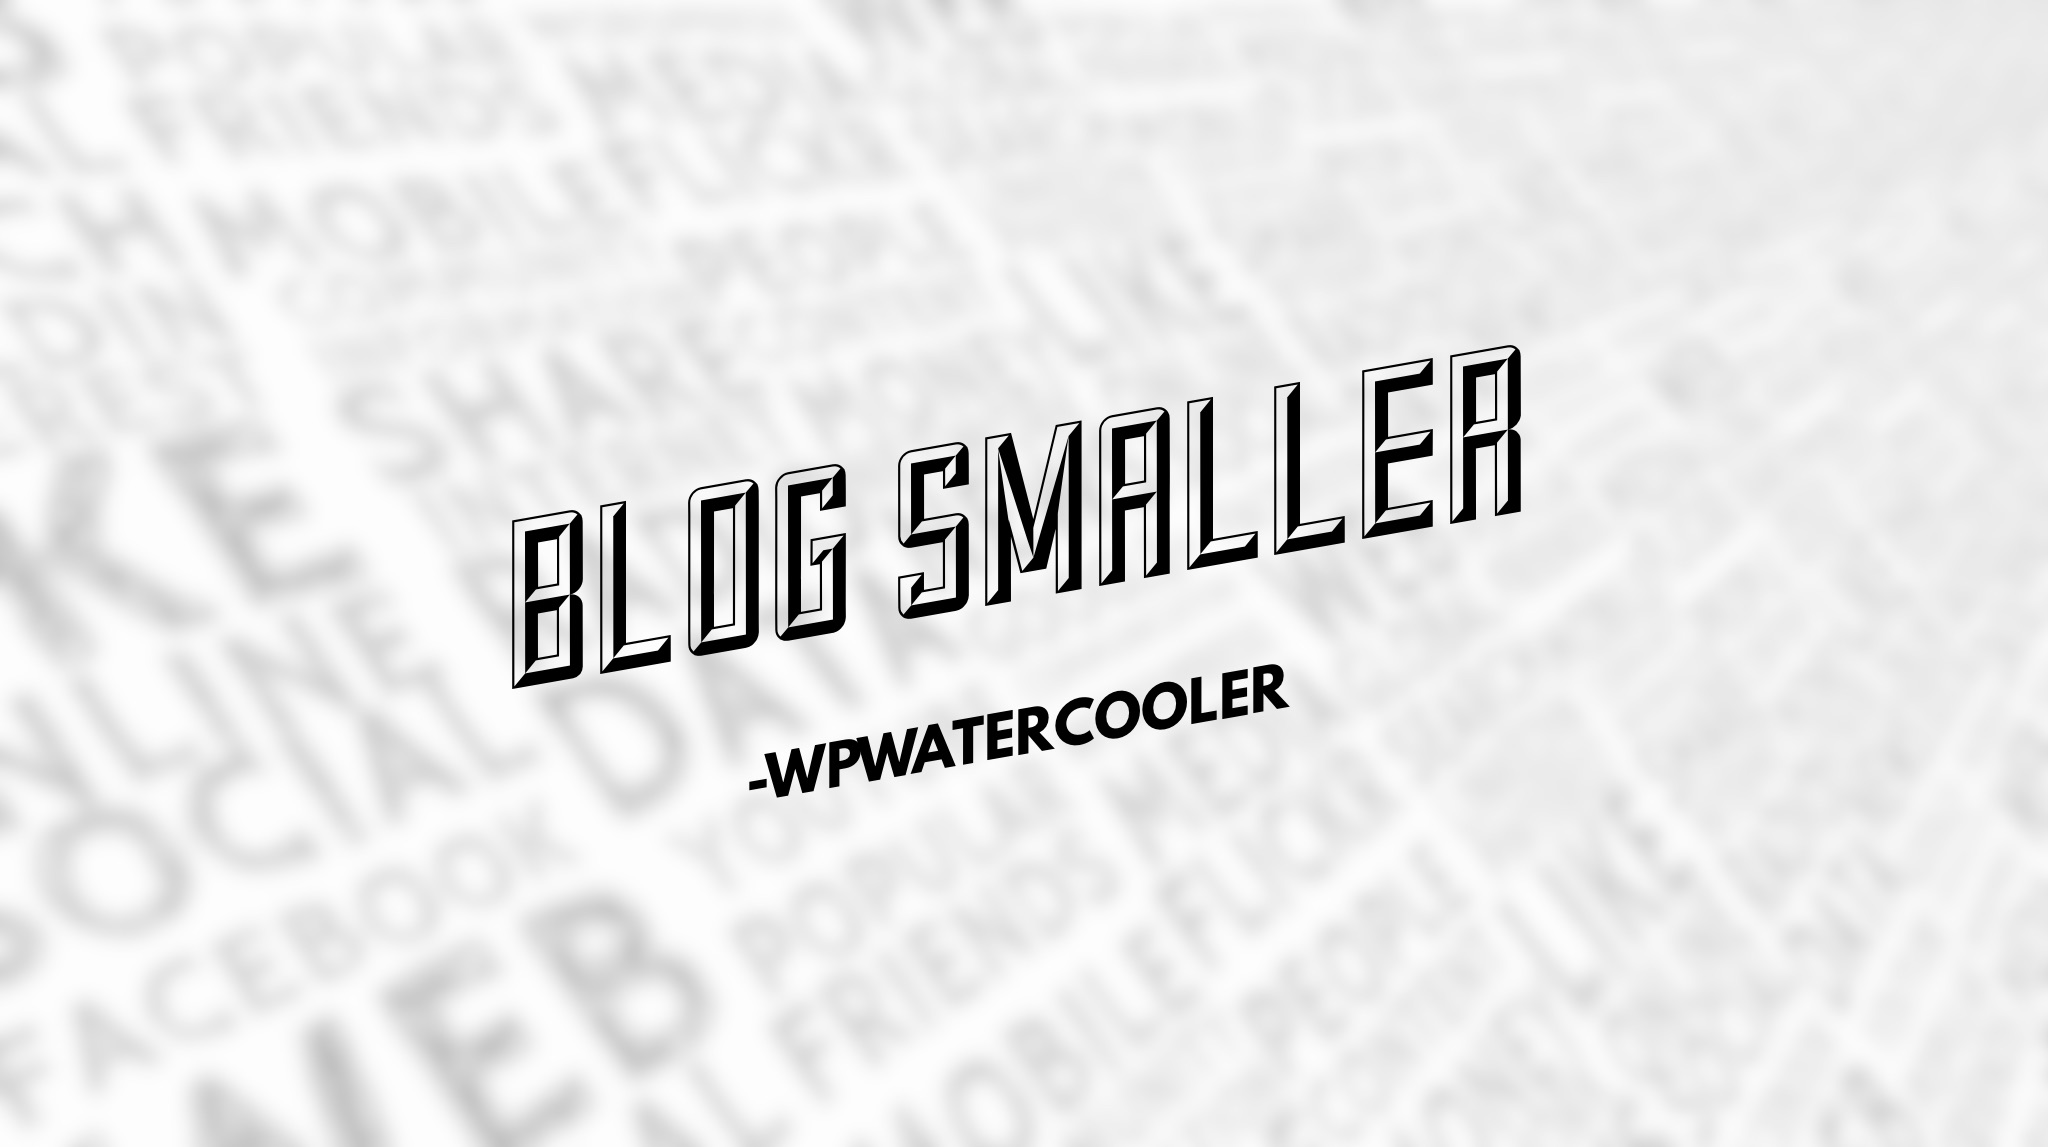 EP271 - Blog Smaller - WPwatercooler